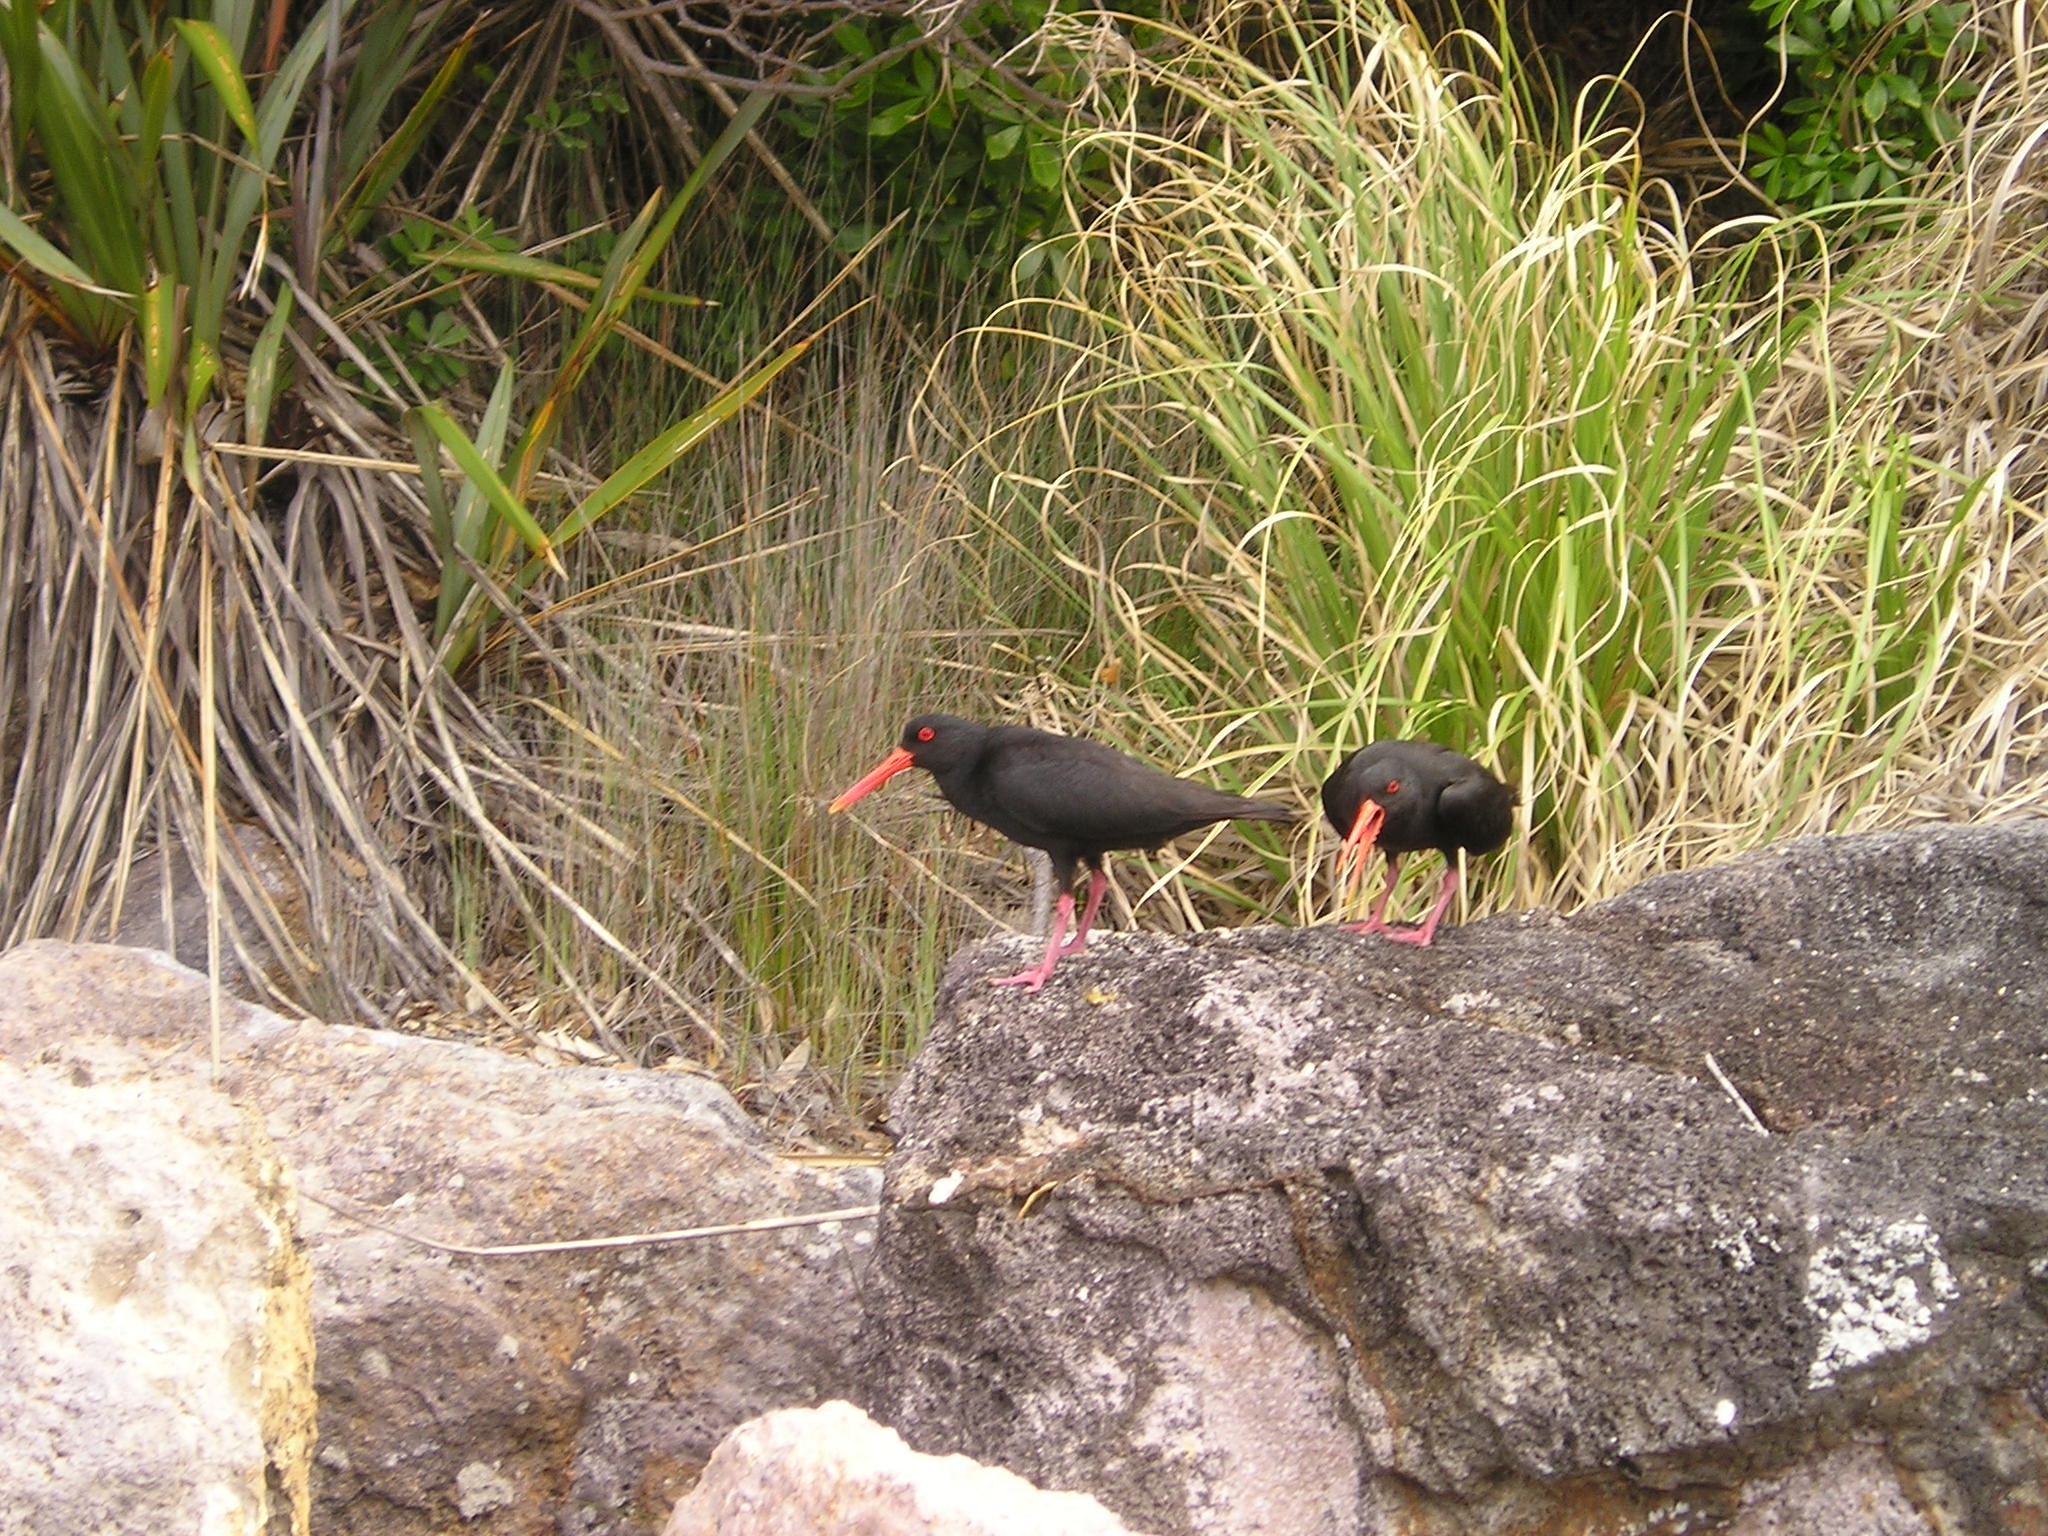 2 black and red beak bird